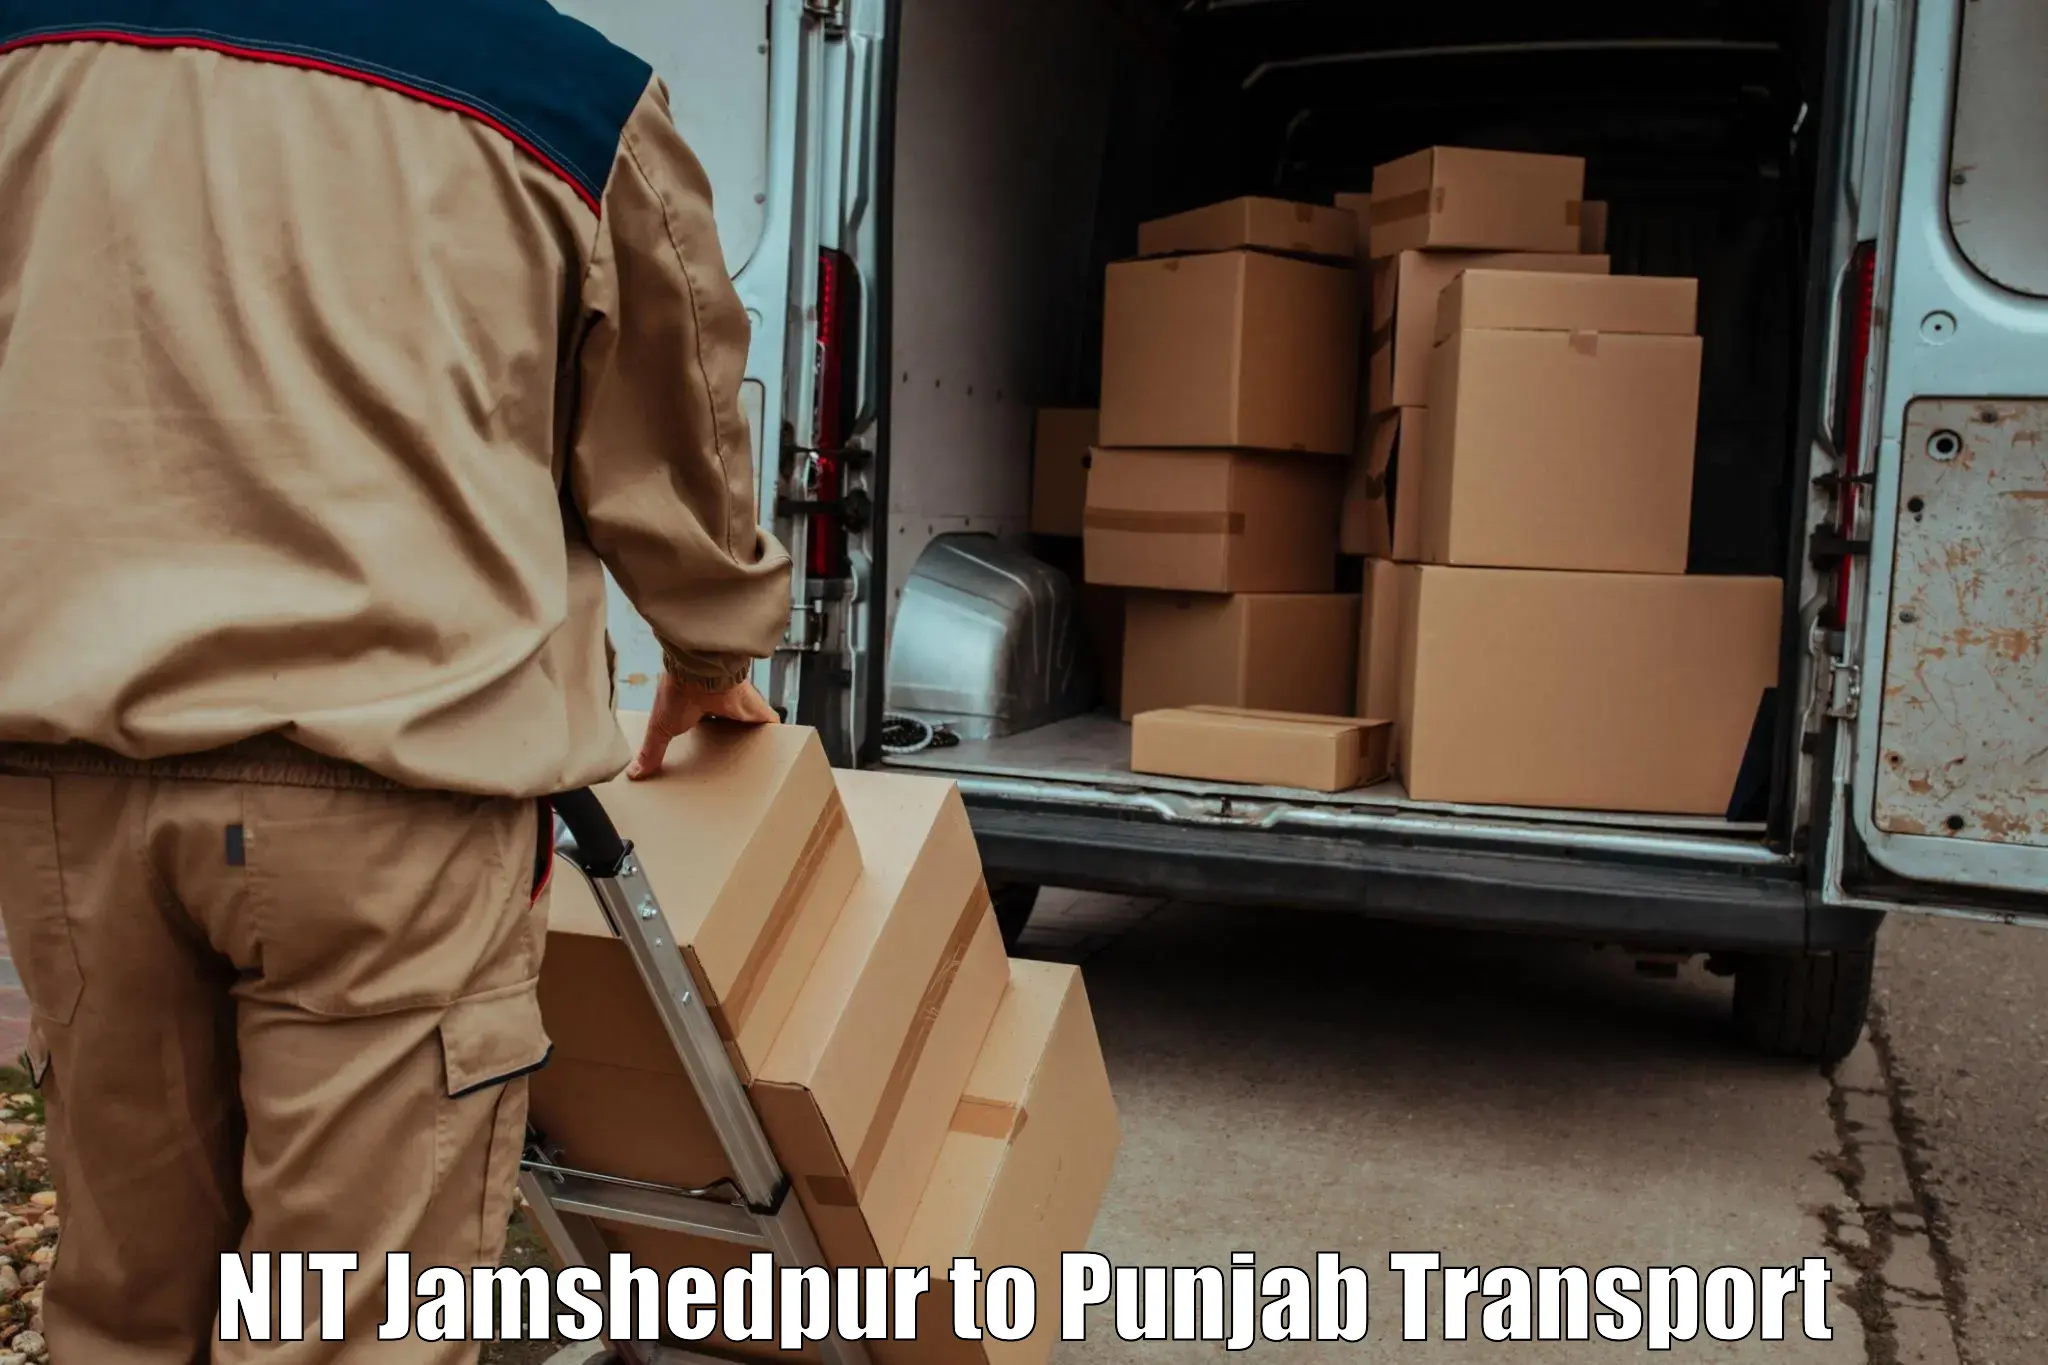 Commercial transport service NIT Jamshedpur to Barnala